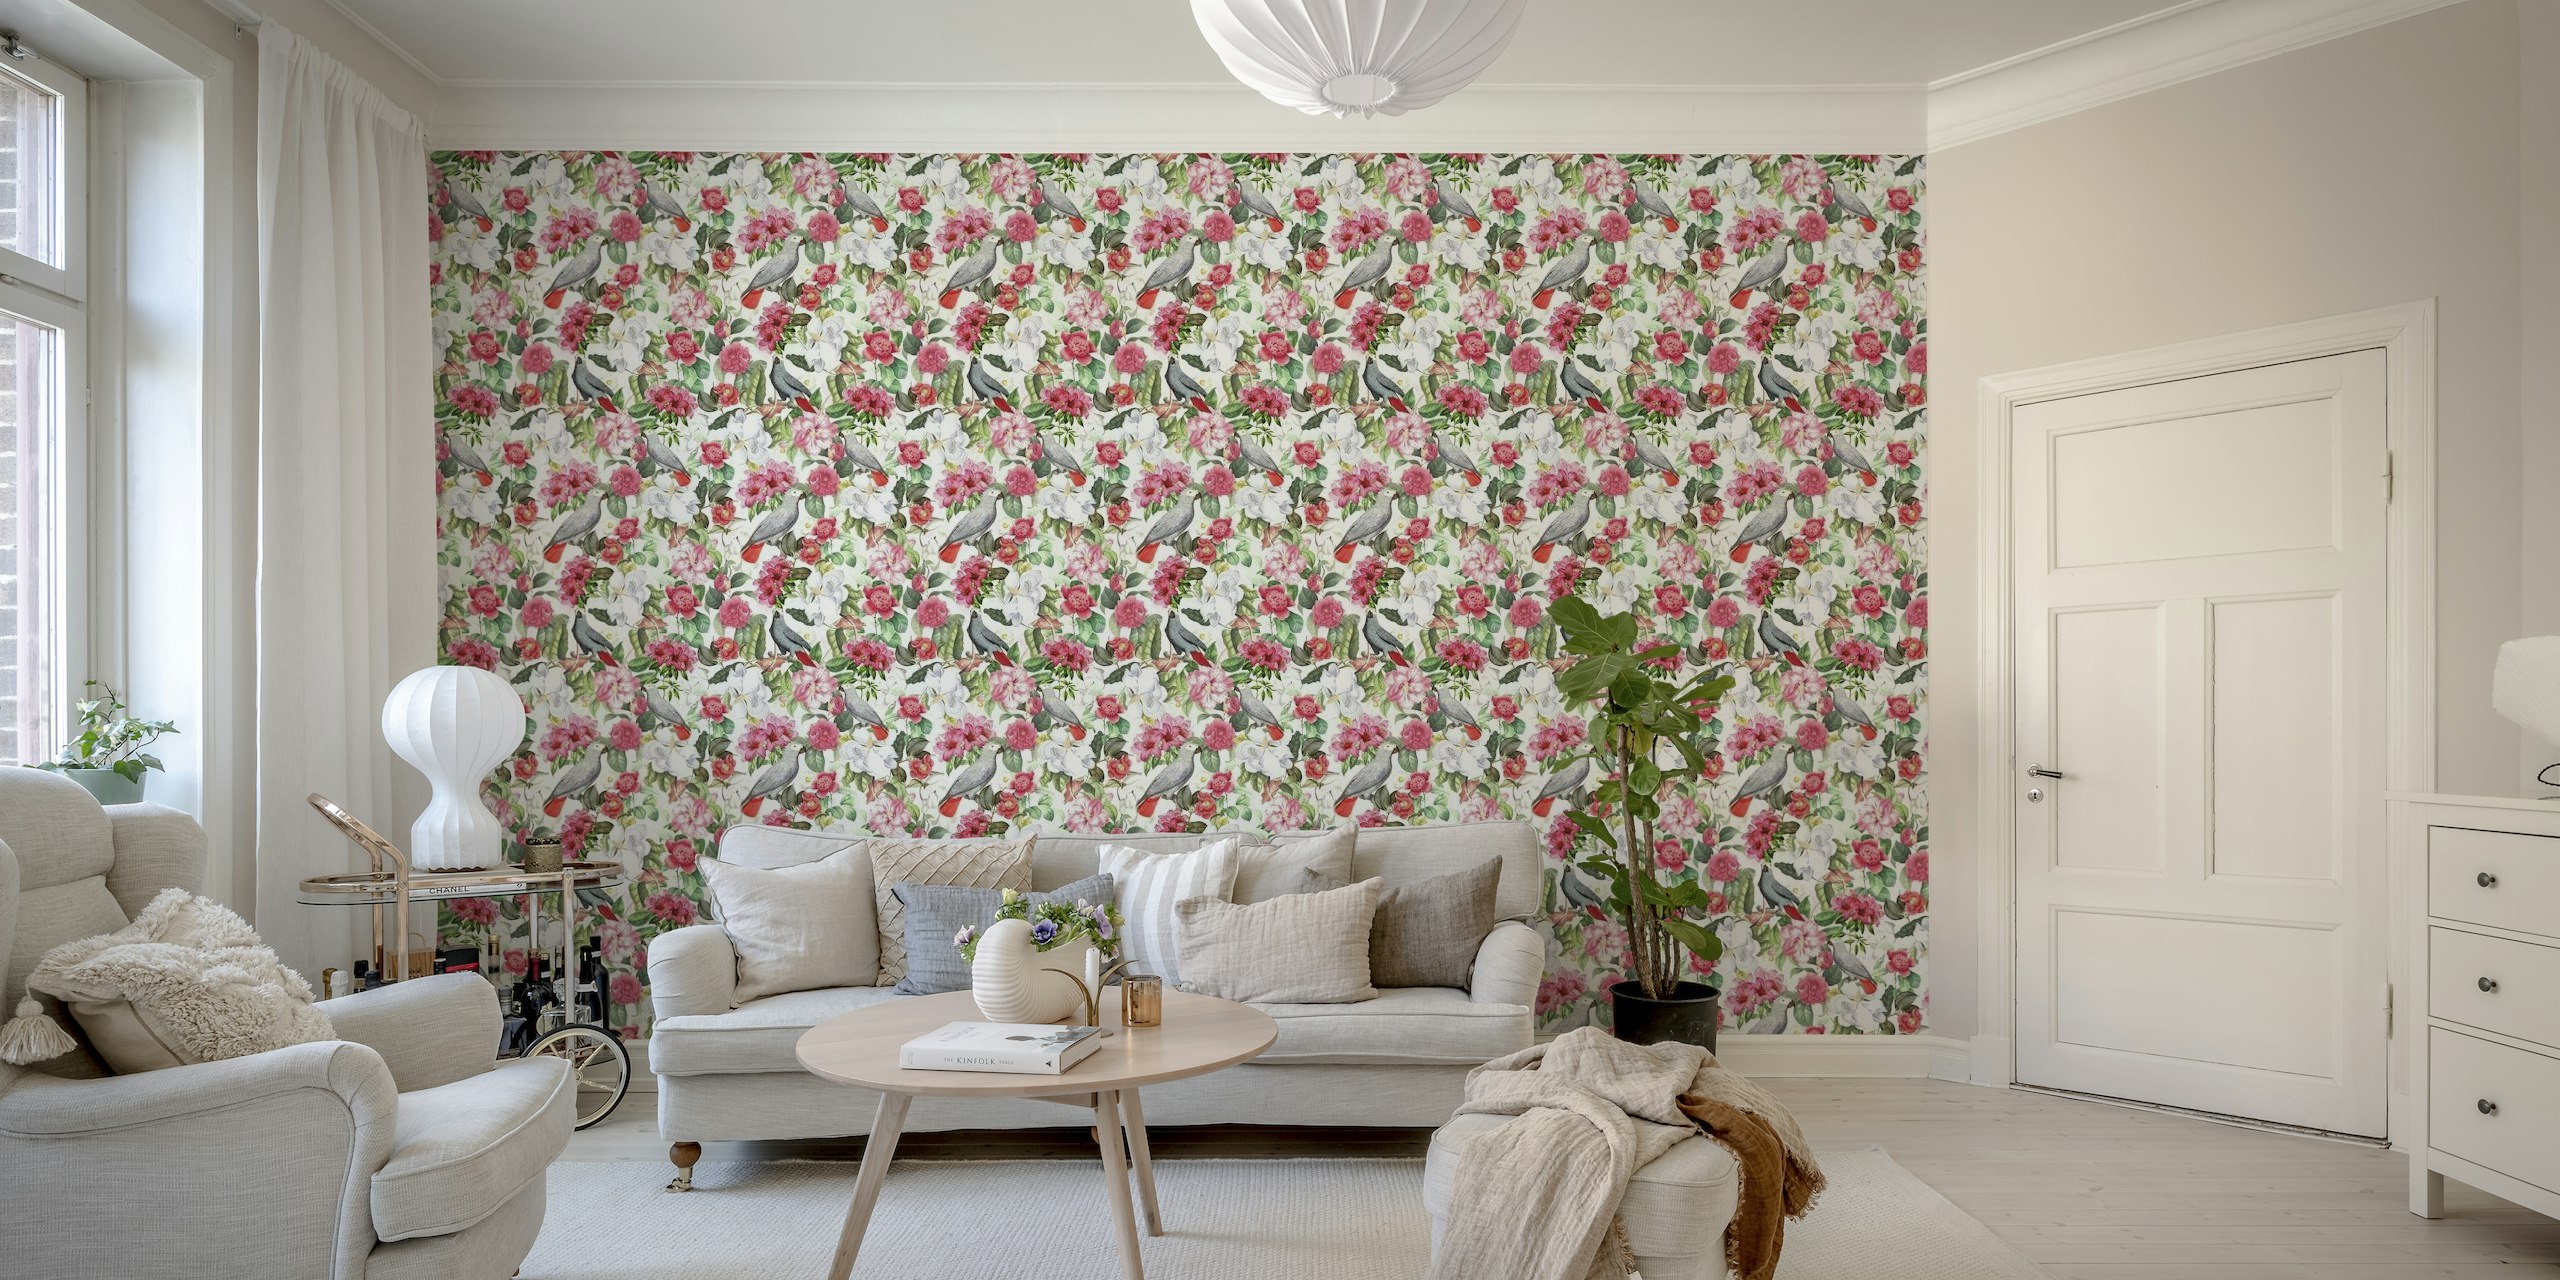 Soft Camellia And Birds Tropical Garden wallpaper behang